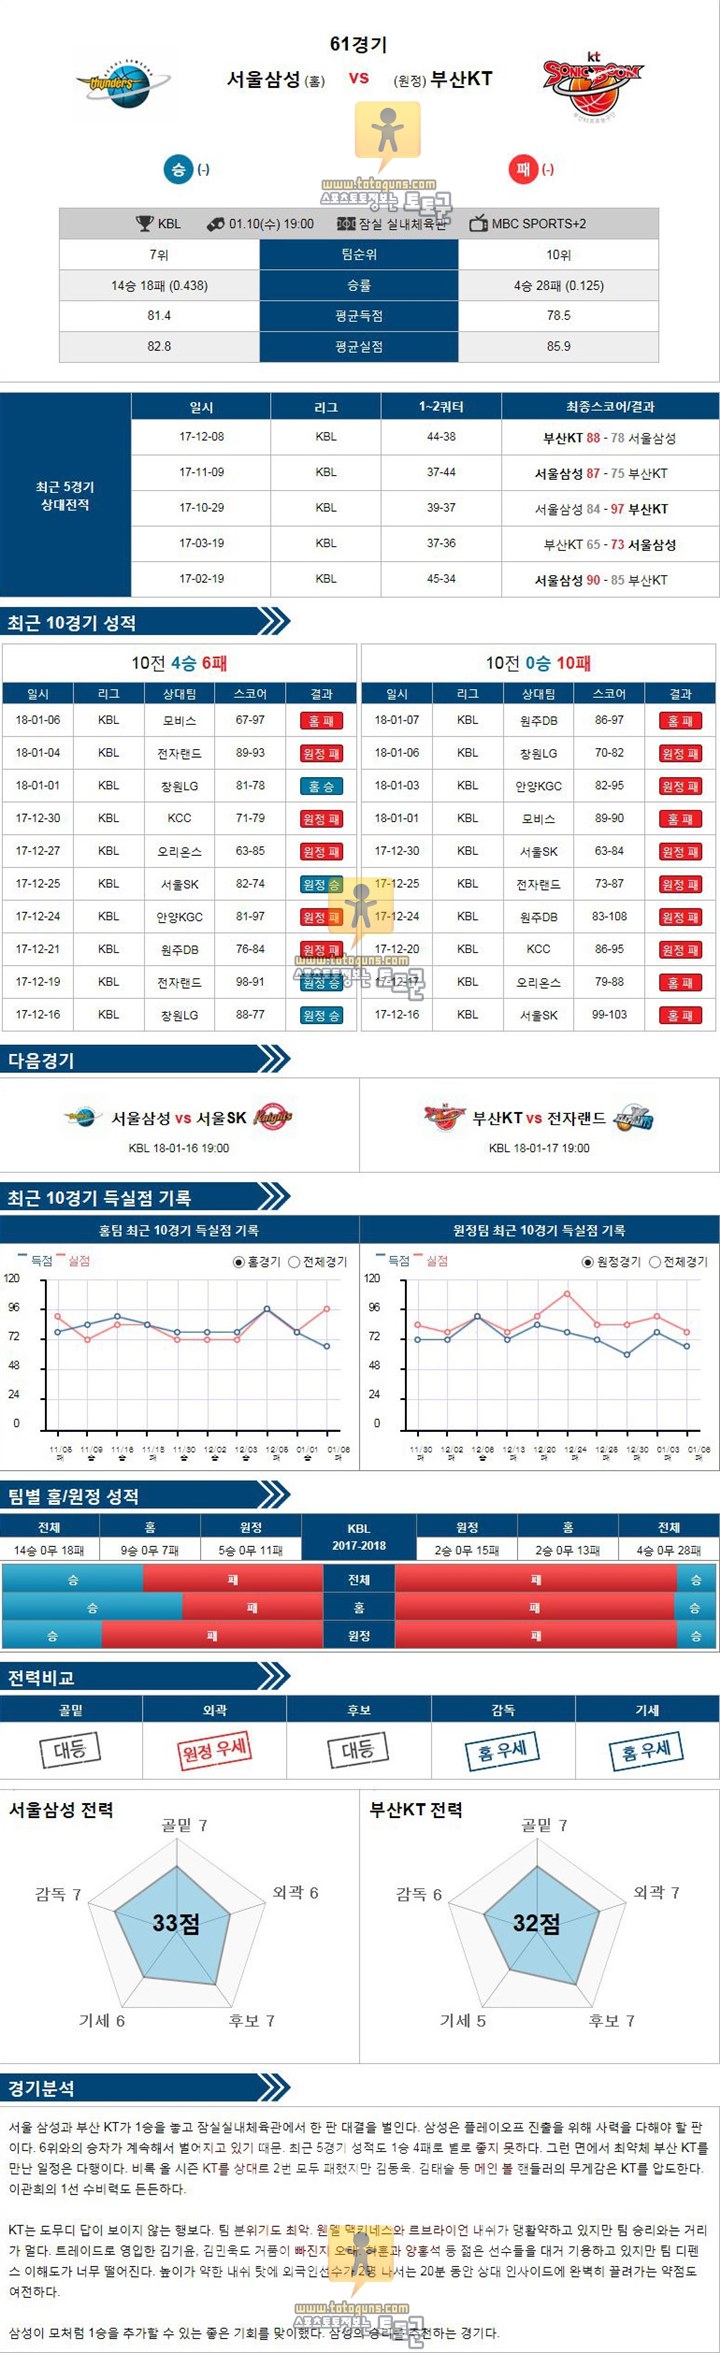 [KBL] 1월 10일 19:00 프로농구분석 서울삼성 vs 부산KT